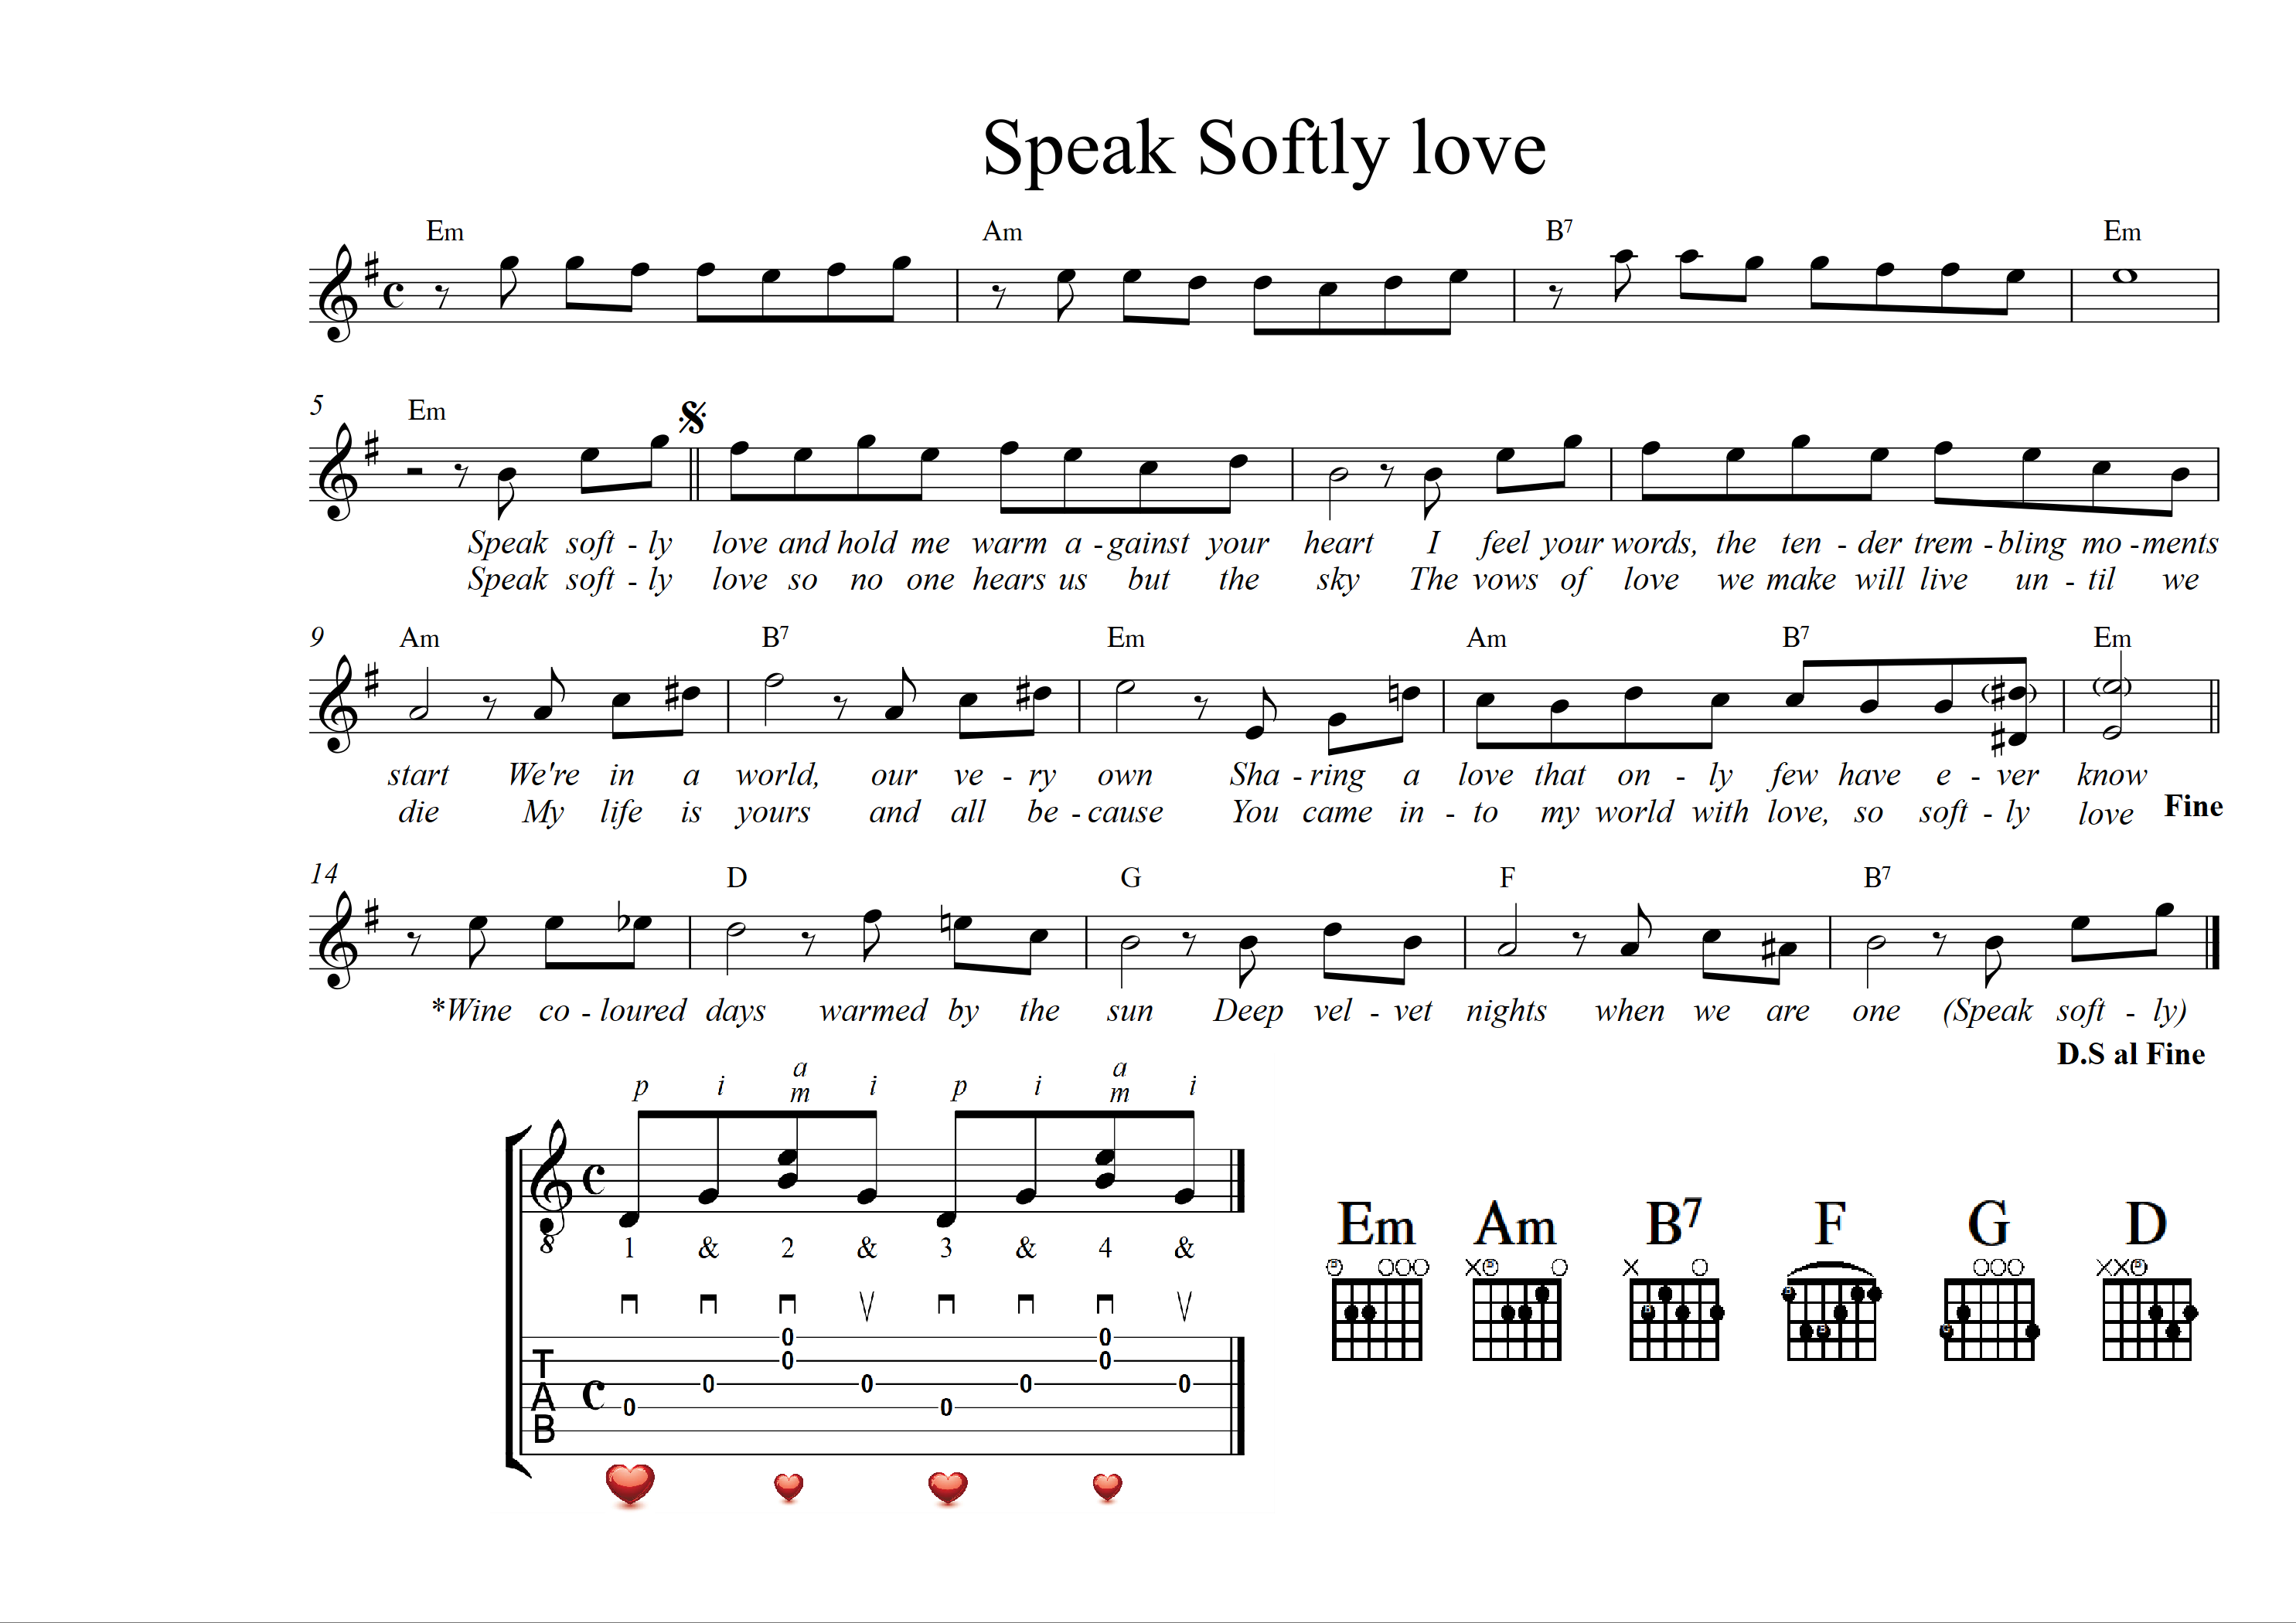 08 Speak softly love - 1